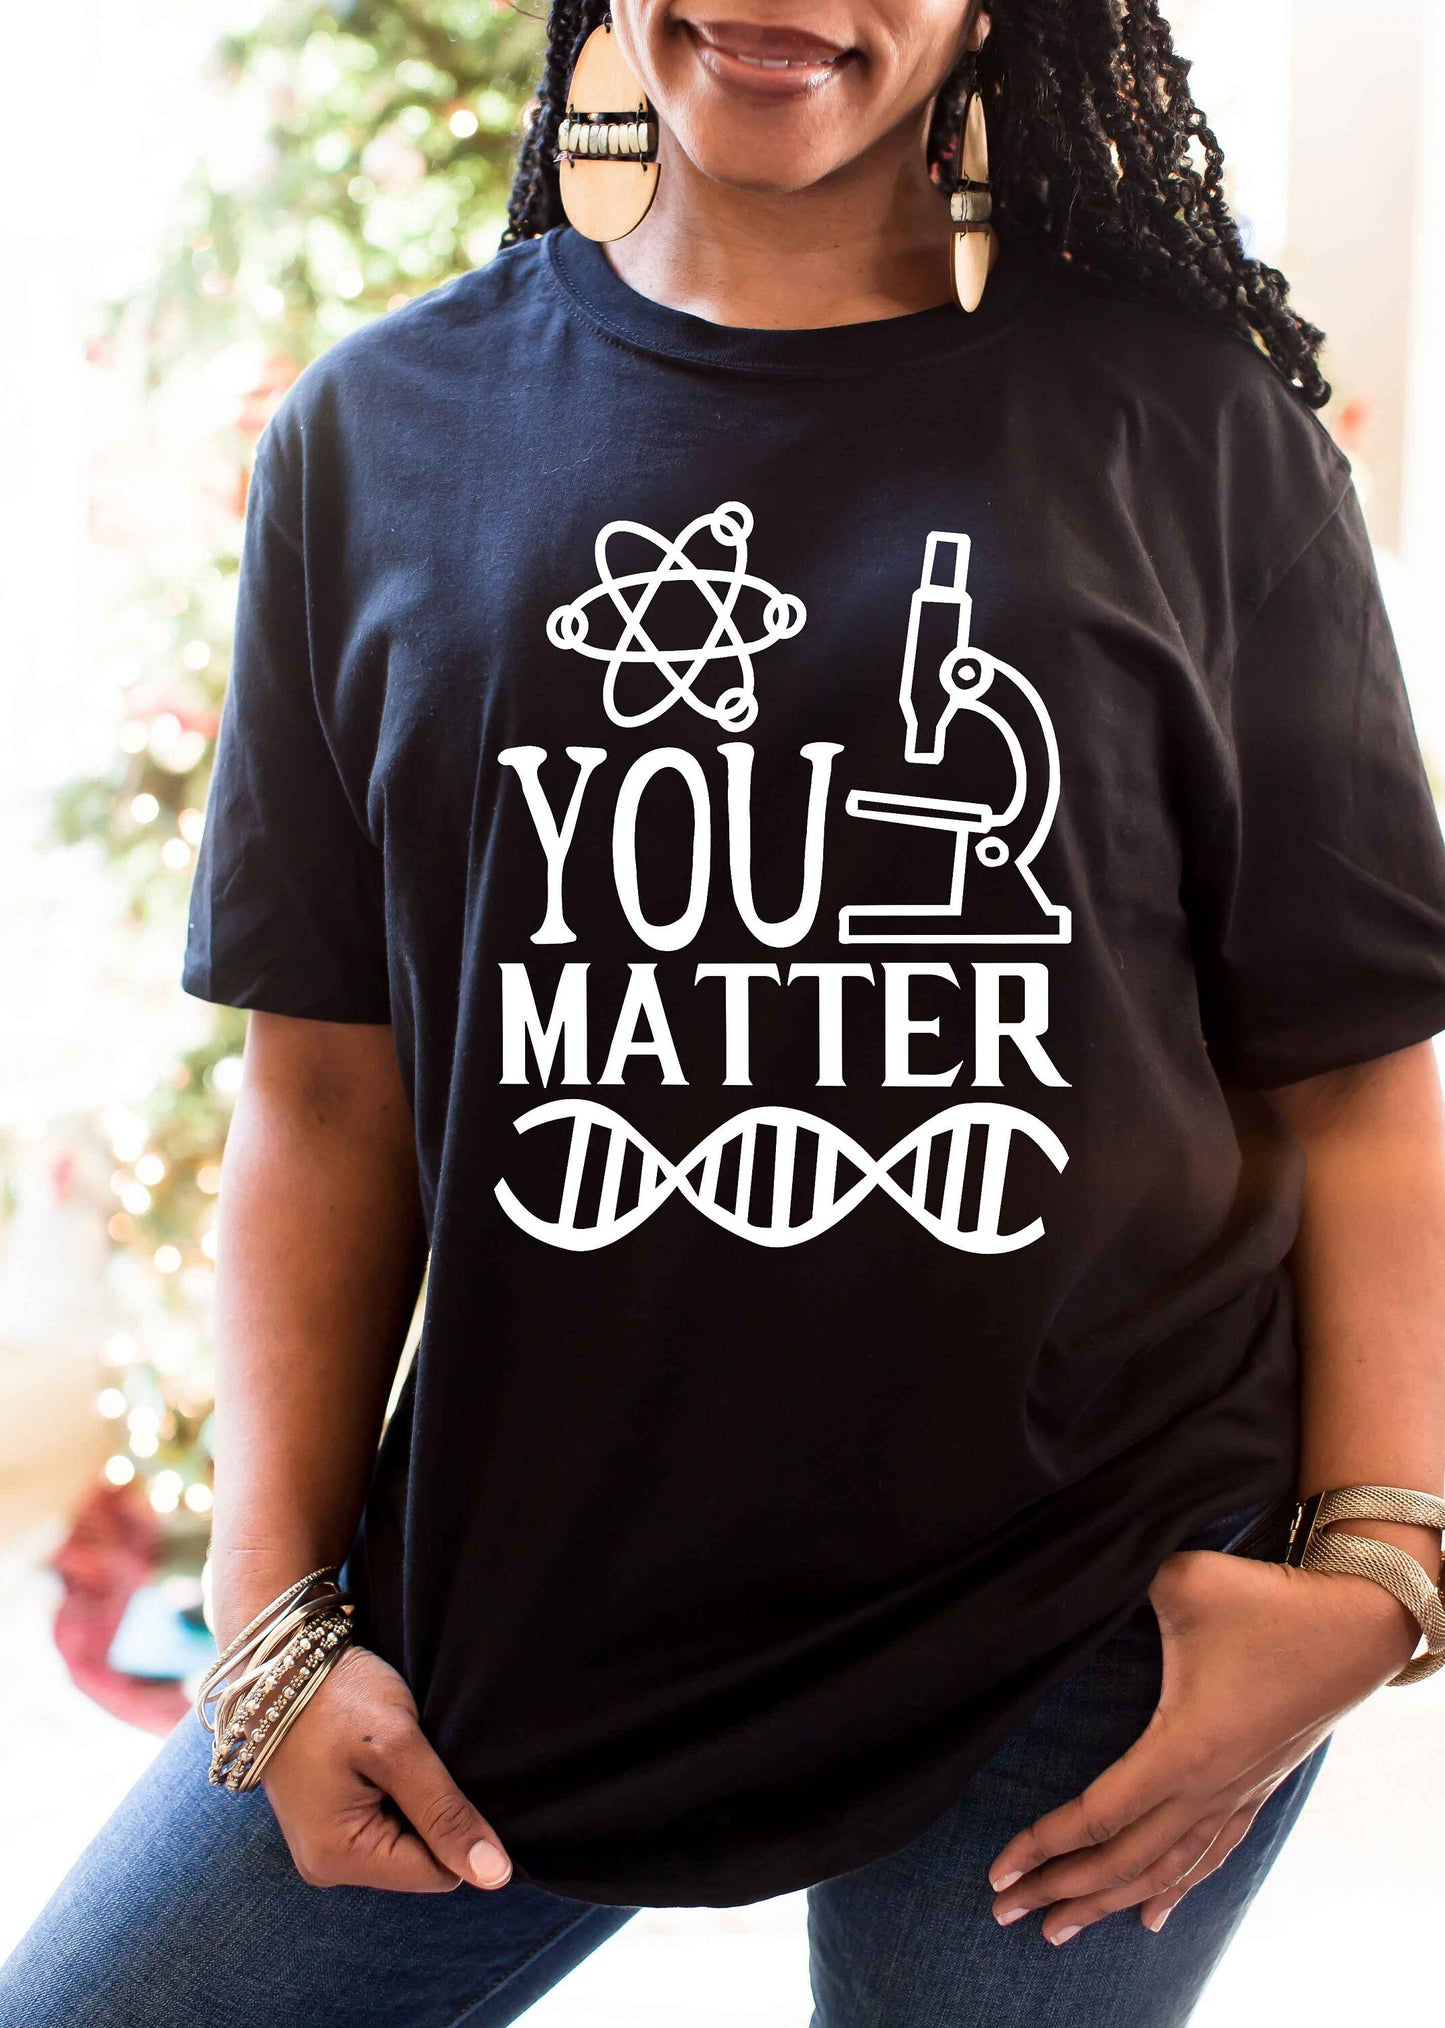 You Matter unisex fit t-shirt • science teacher gift • scientist shirt • chemistry shirt • nerd shirt